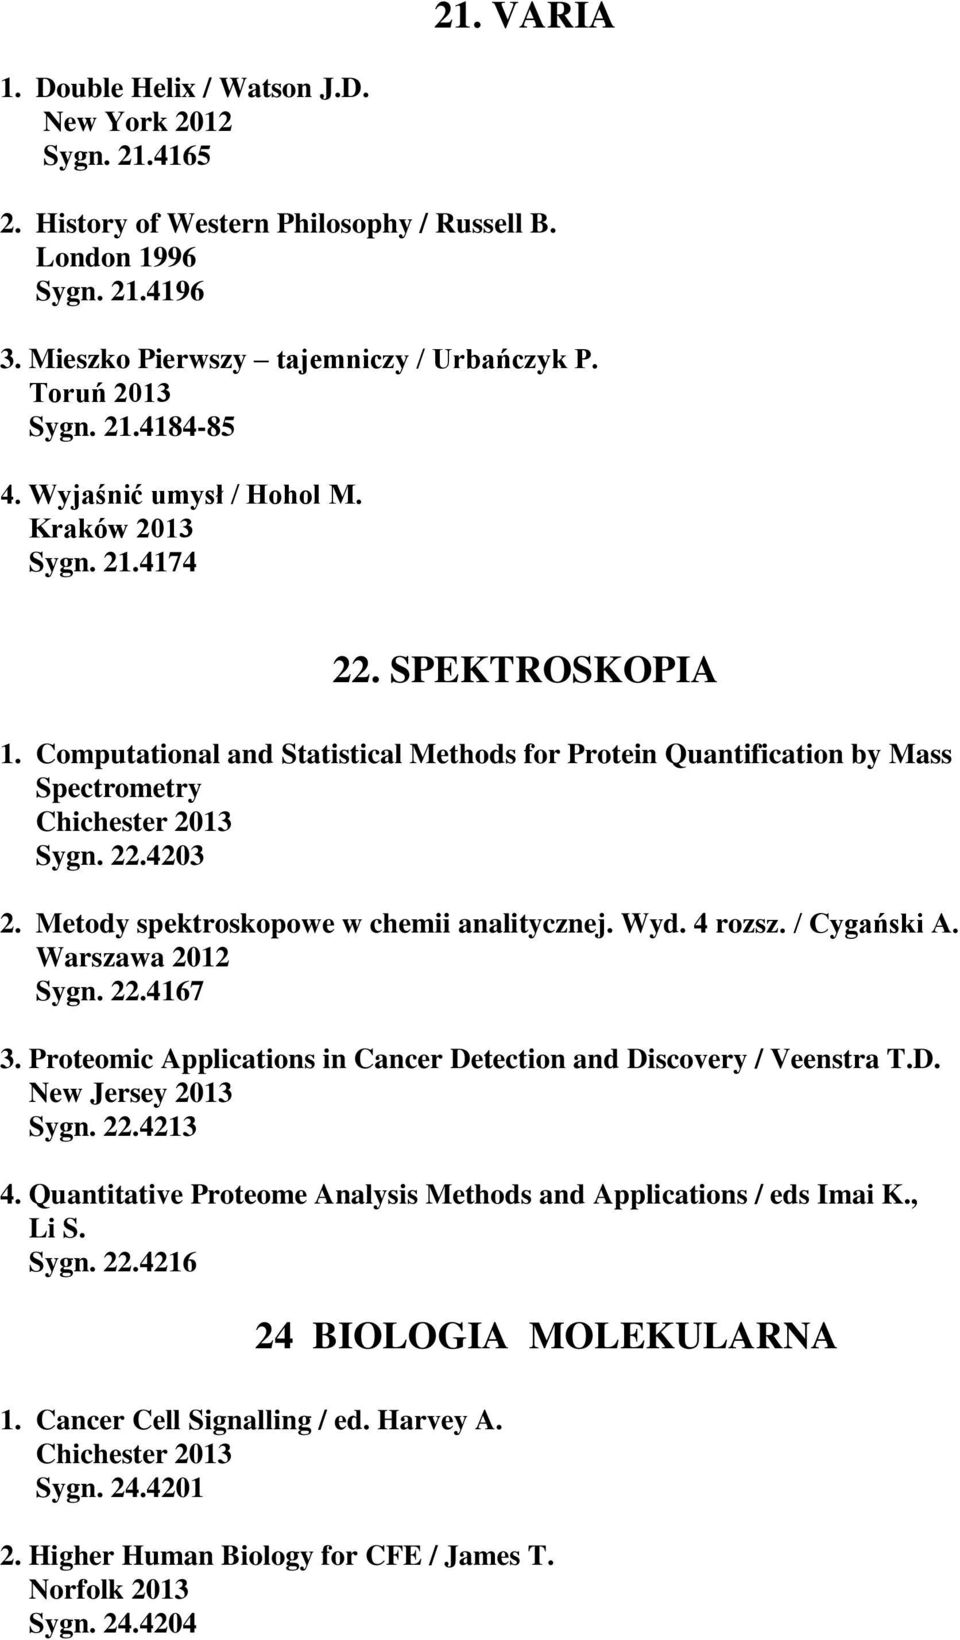 Computational and Statistical Methods for Protein Quantification by Mass Spectrometry Chichester 2013 Sygn. 22.4203 2. Metody spektroskopowe w chemii analitycznej. Wyd. 4 rozsz. / Cygański A. Sygn. 22.4167 3.